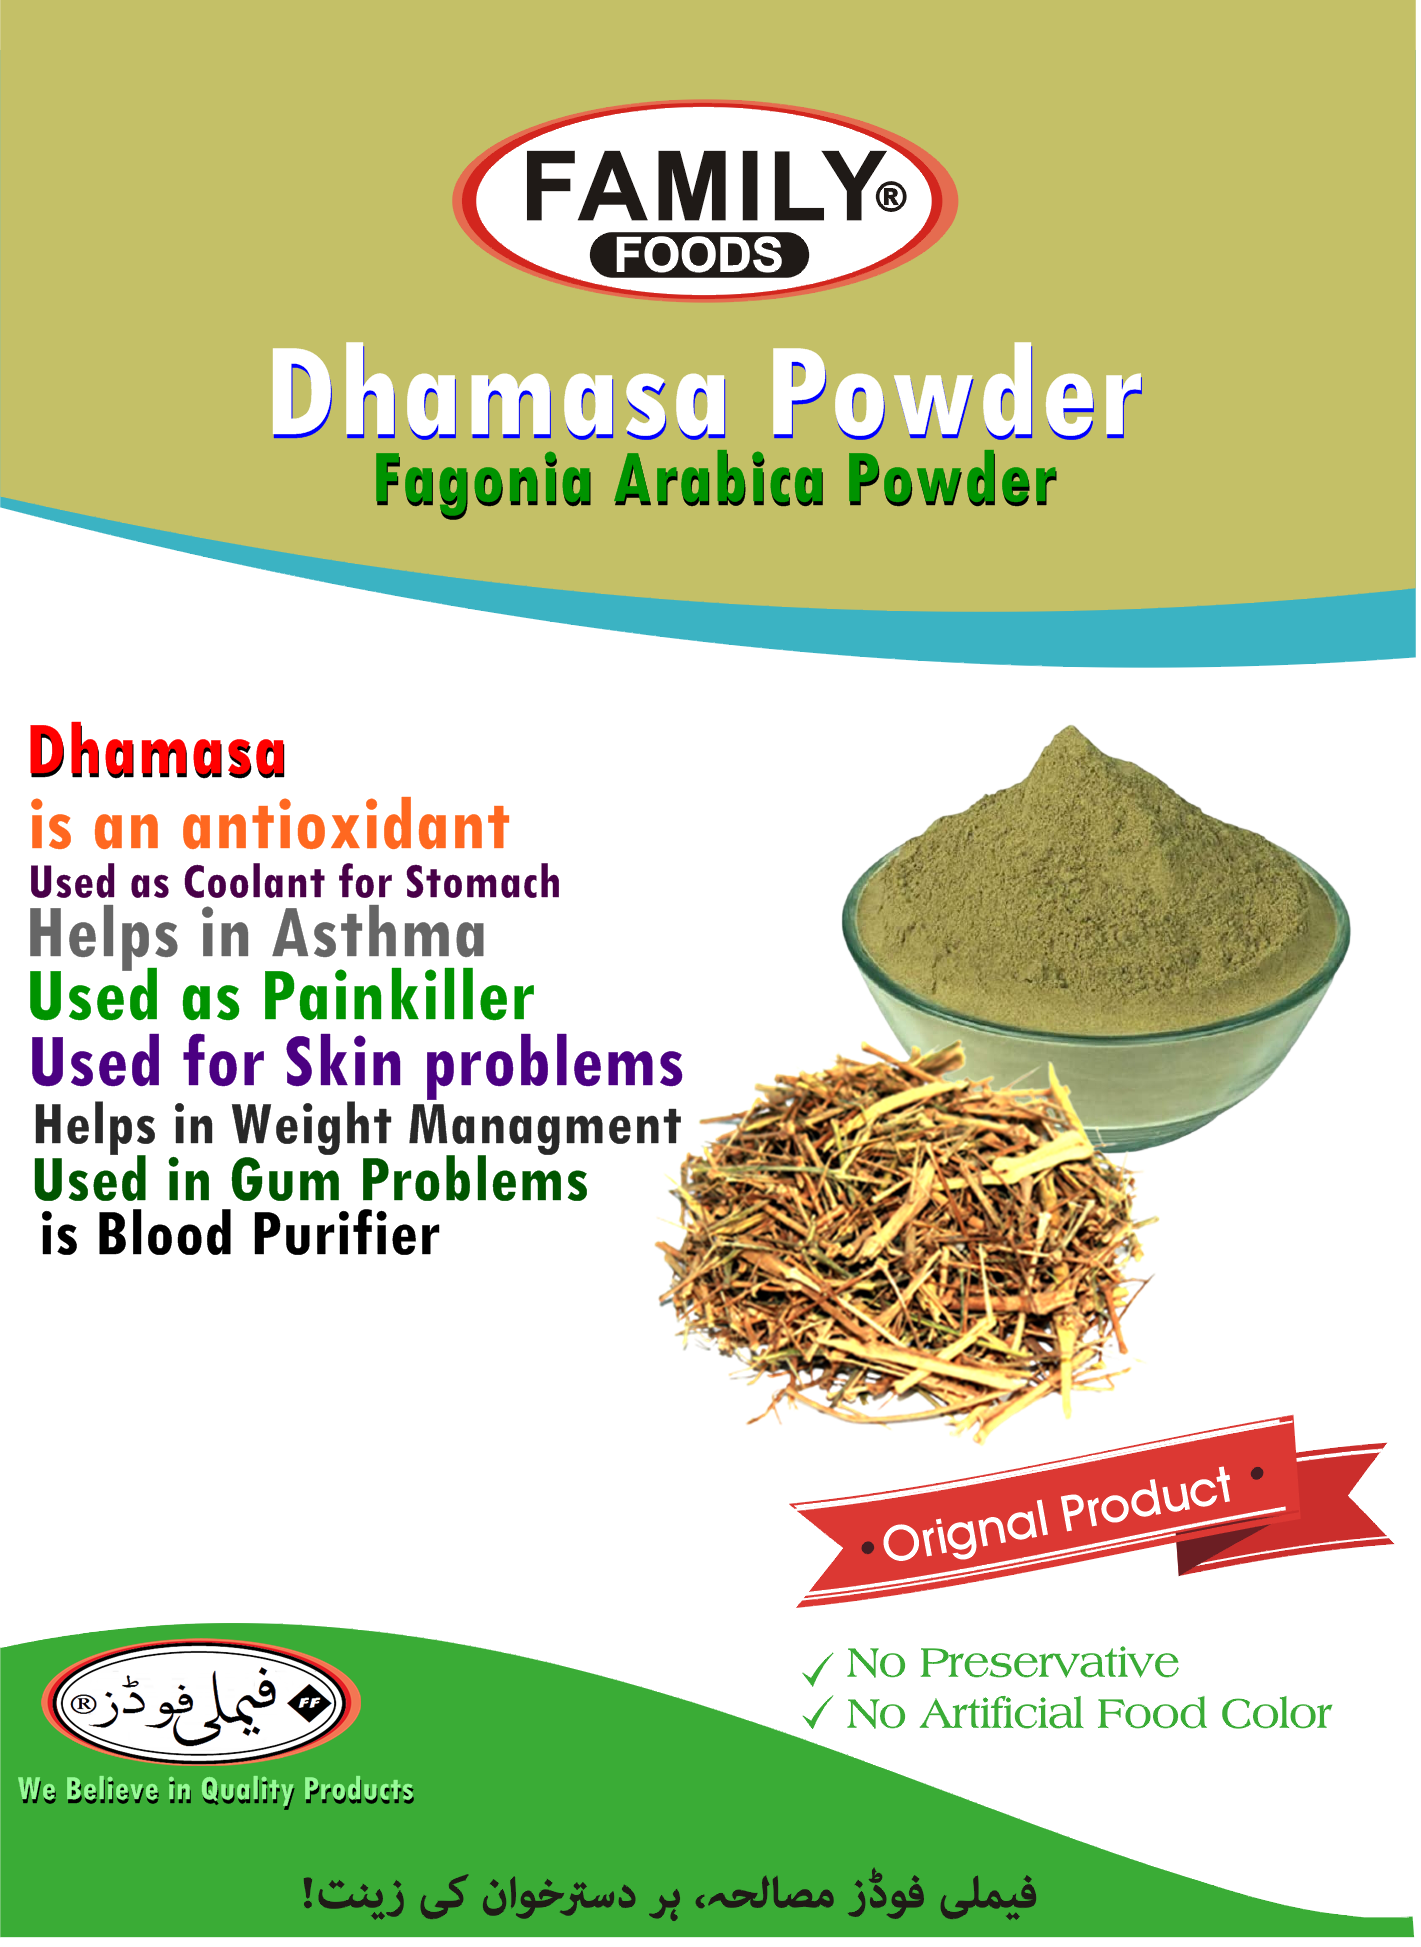 Organic Dhamasa Powder | Fagonia Arabica Powder.